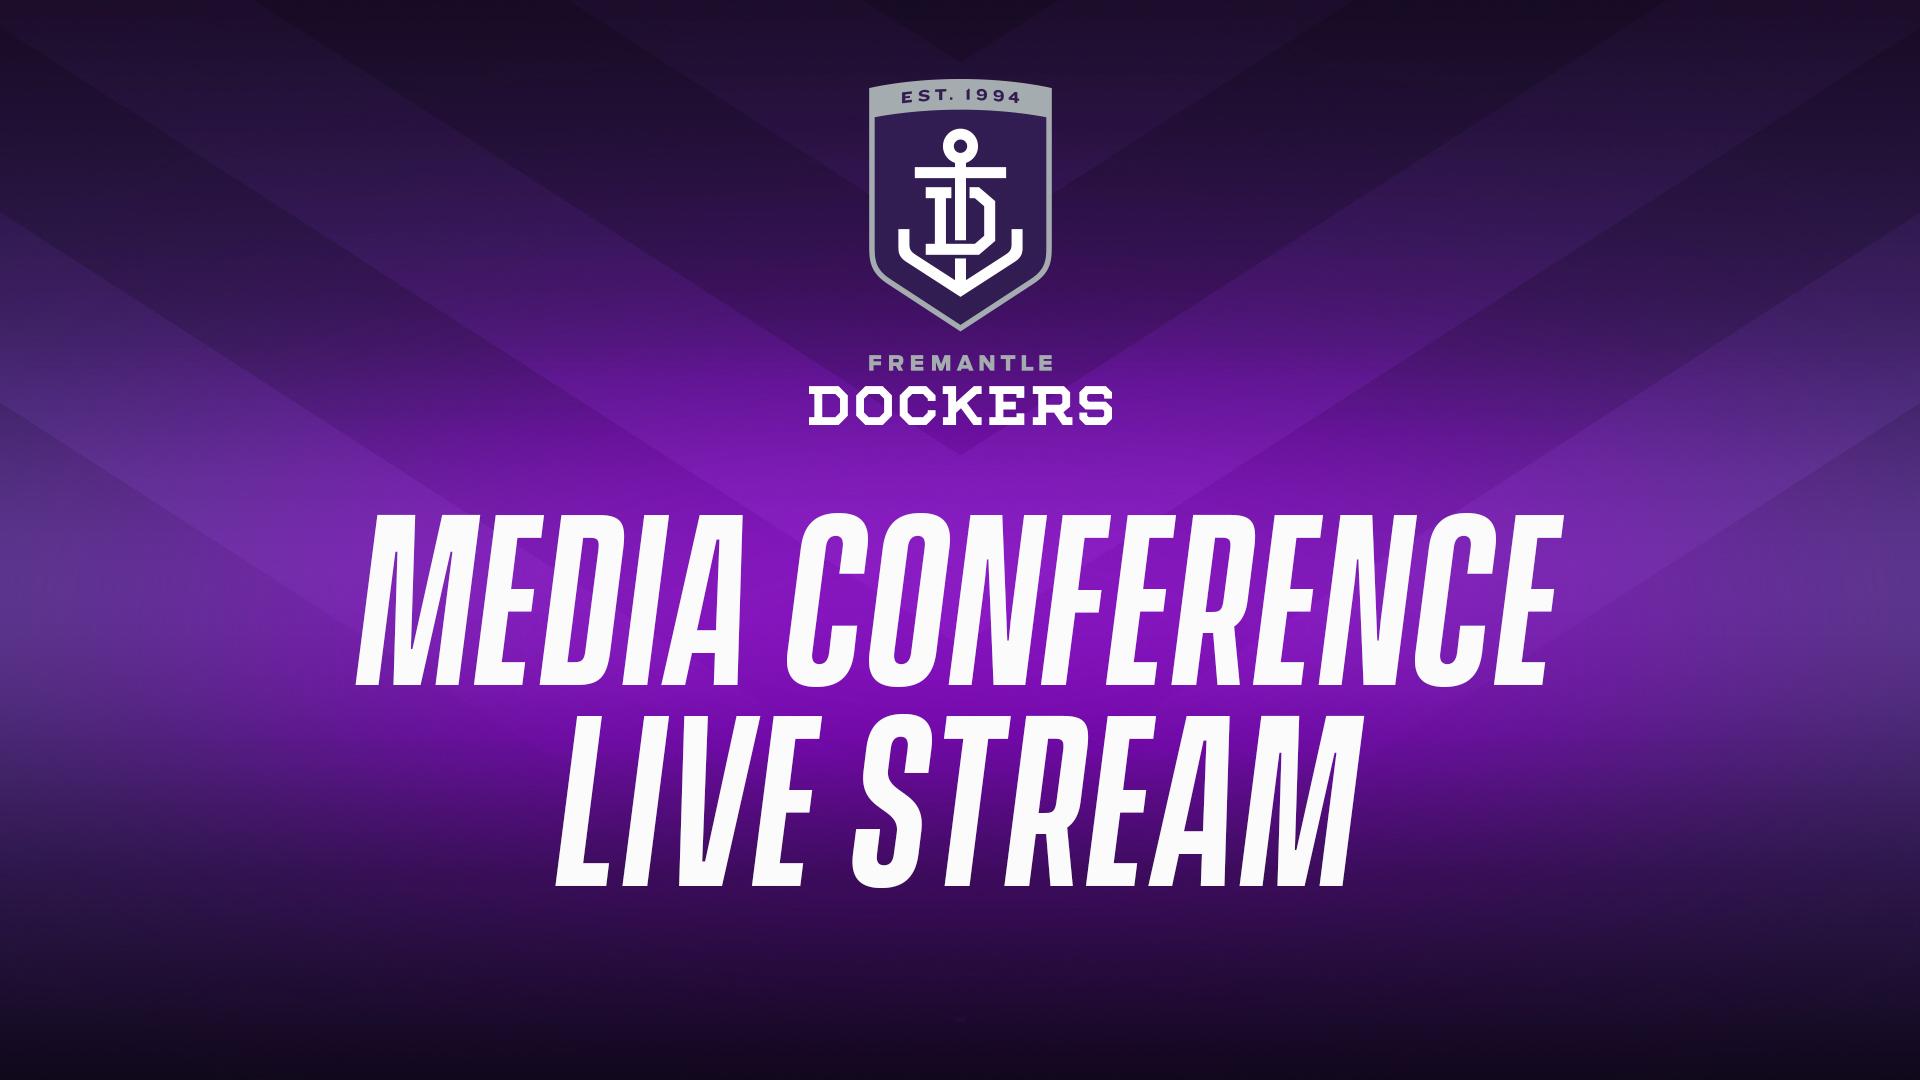 Live stream: Fremantle Dockers media conference